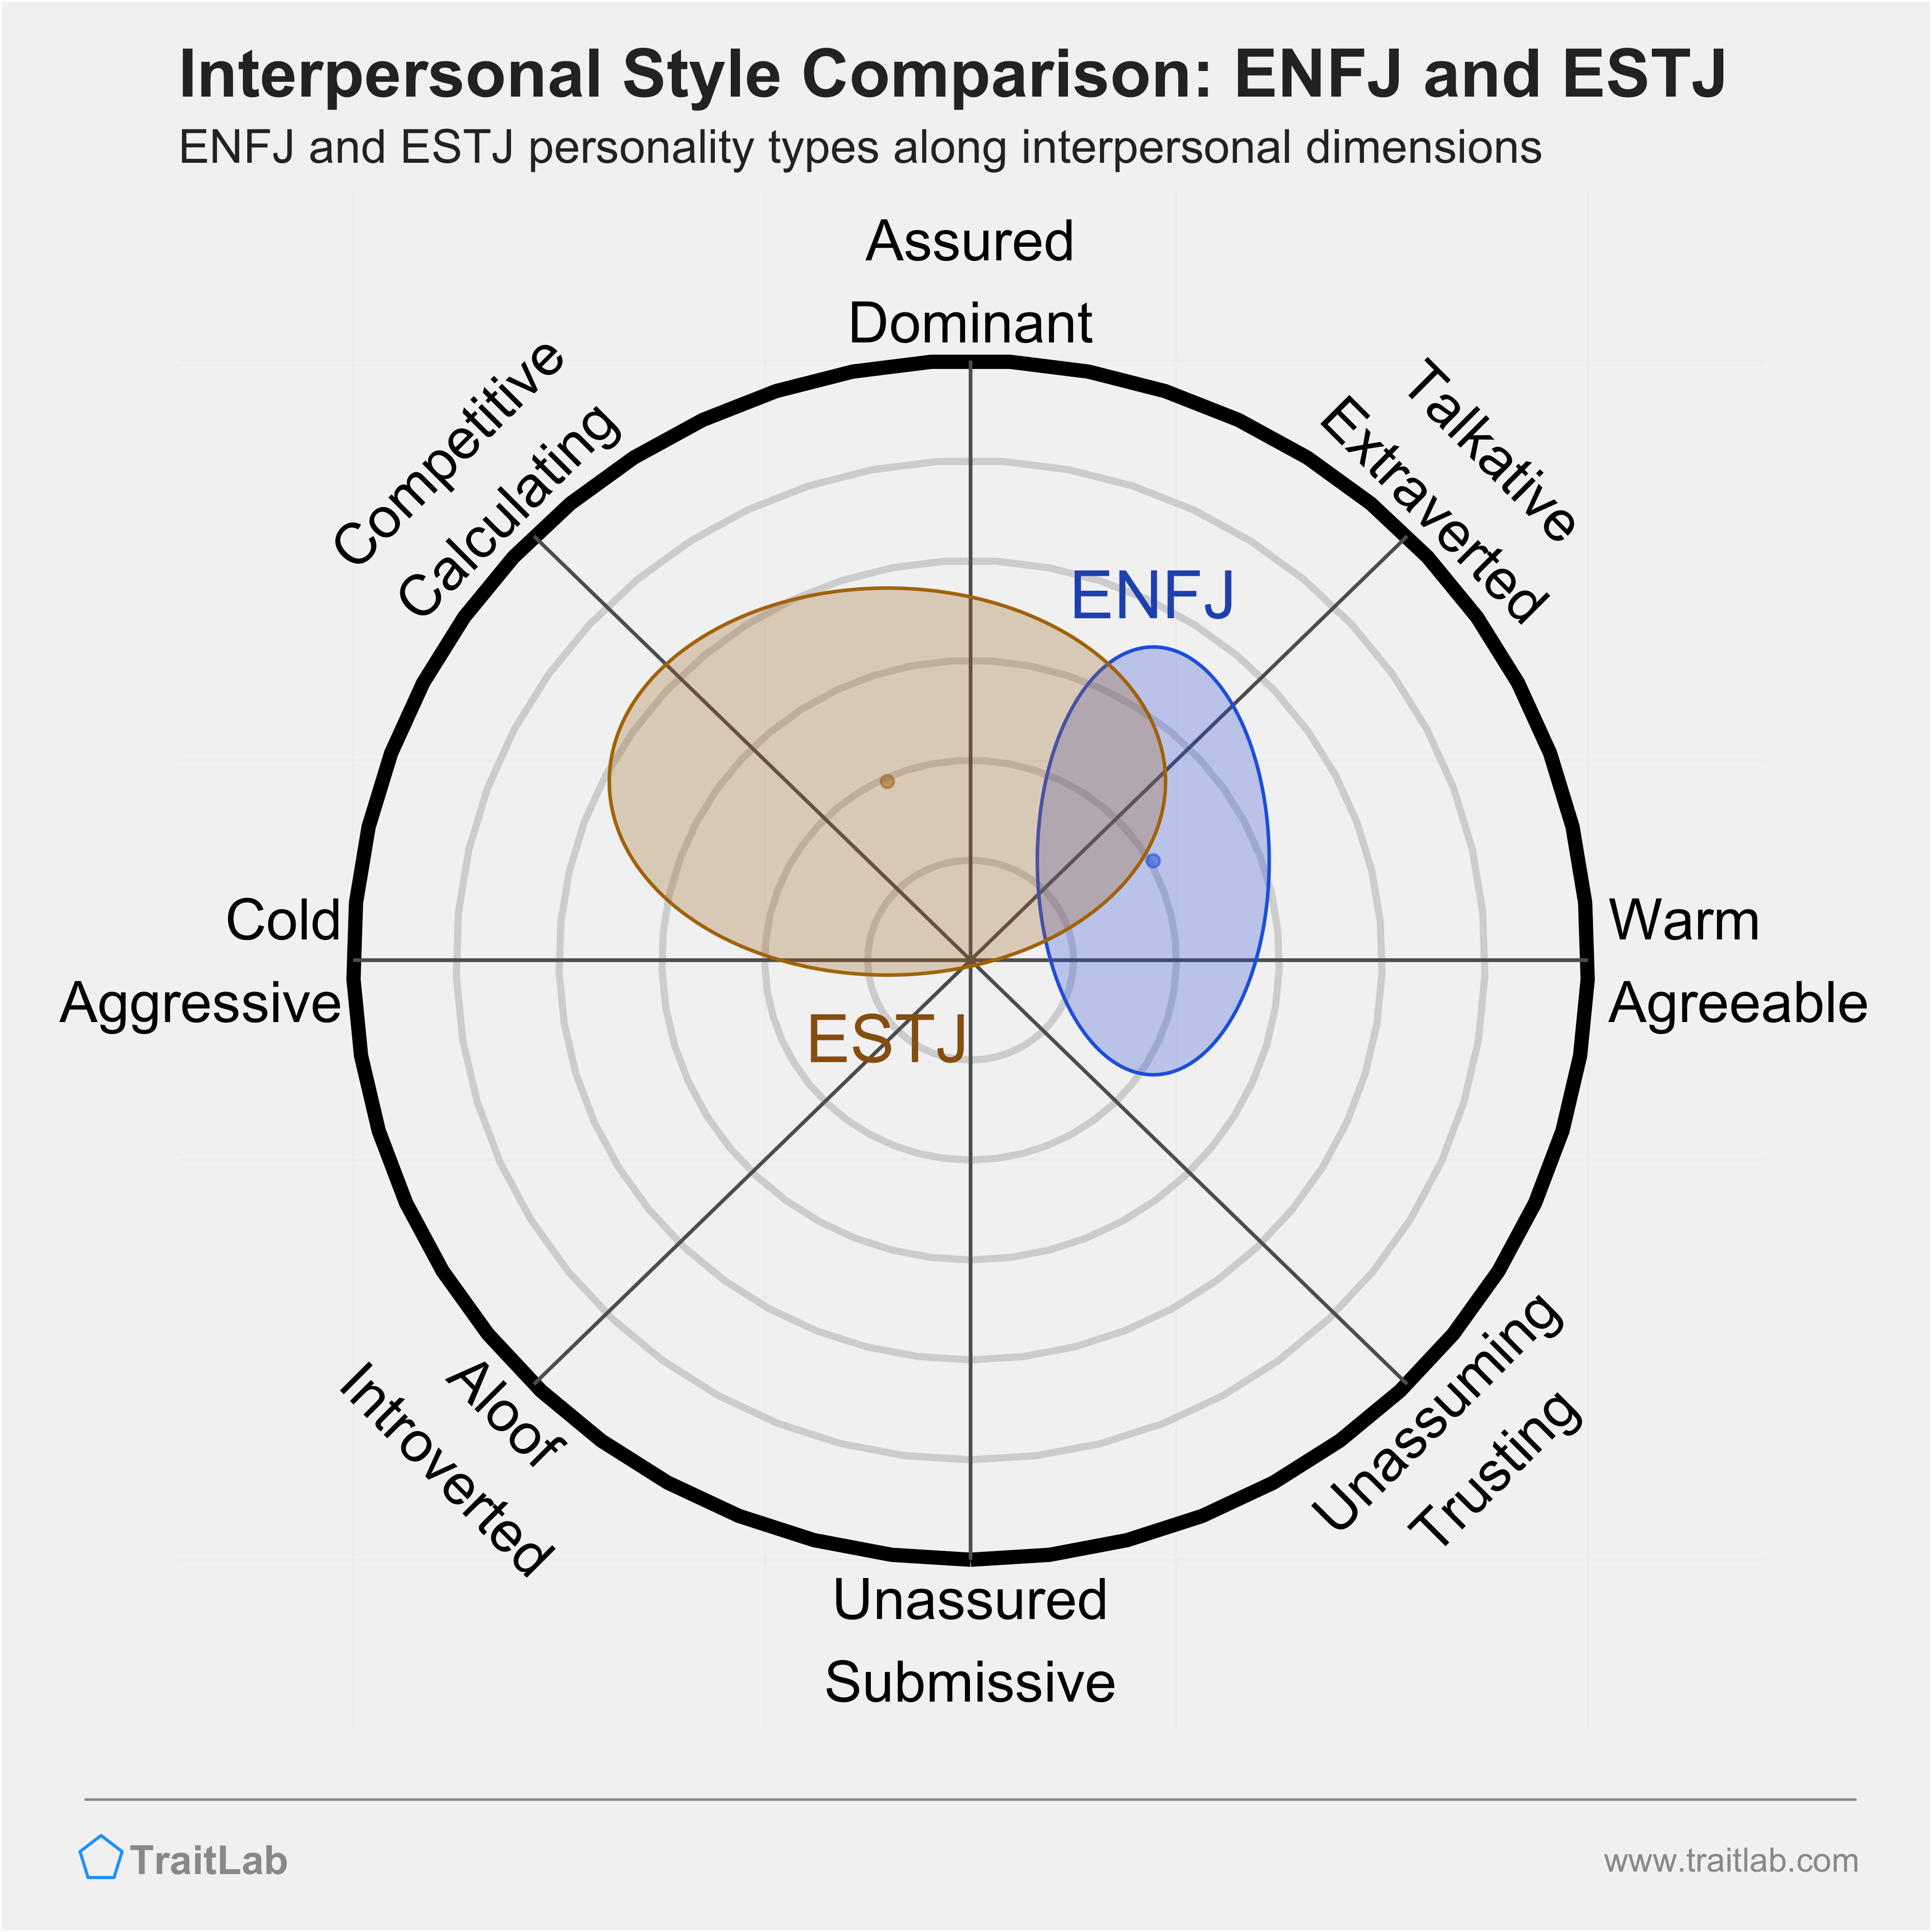 ENFJ and ESTJ comparison across interpersonal dimensions